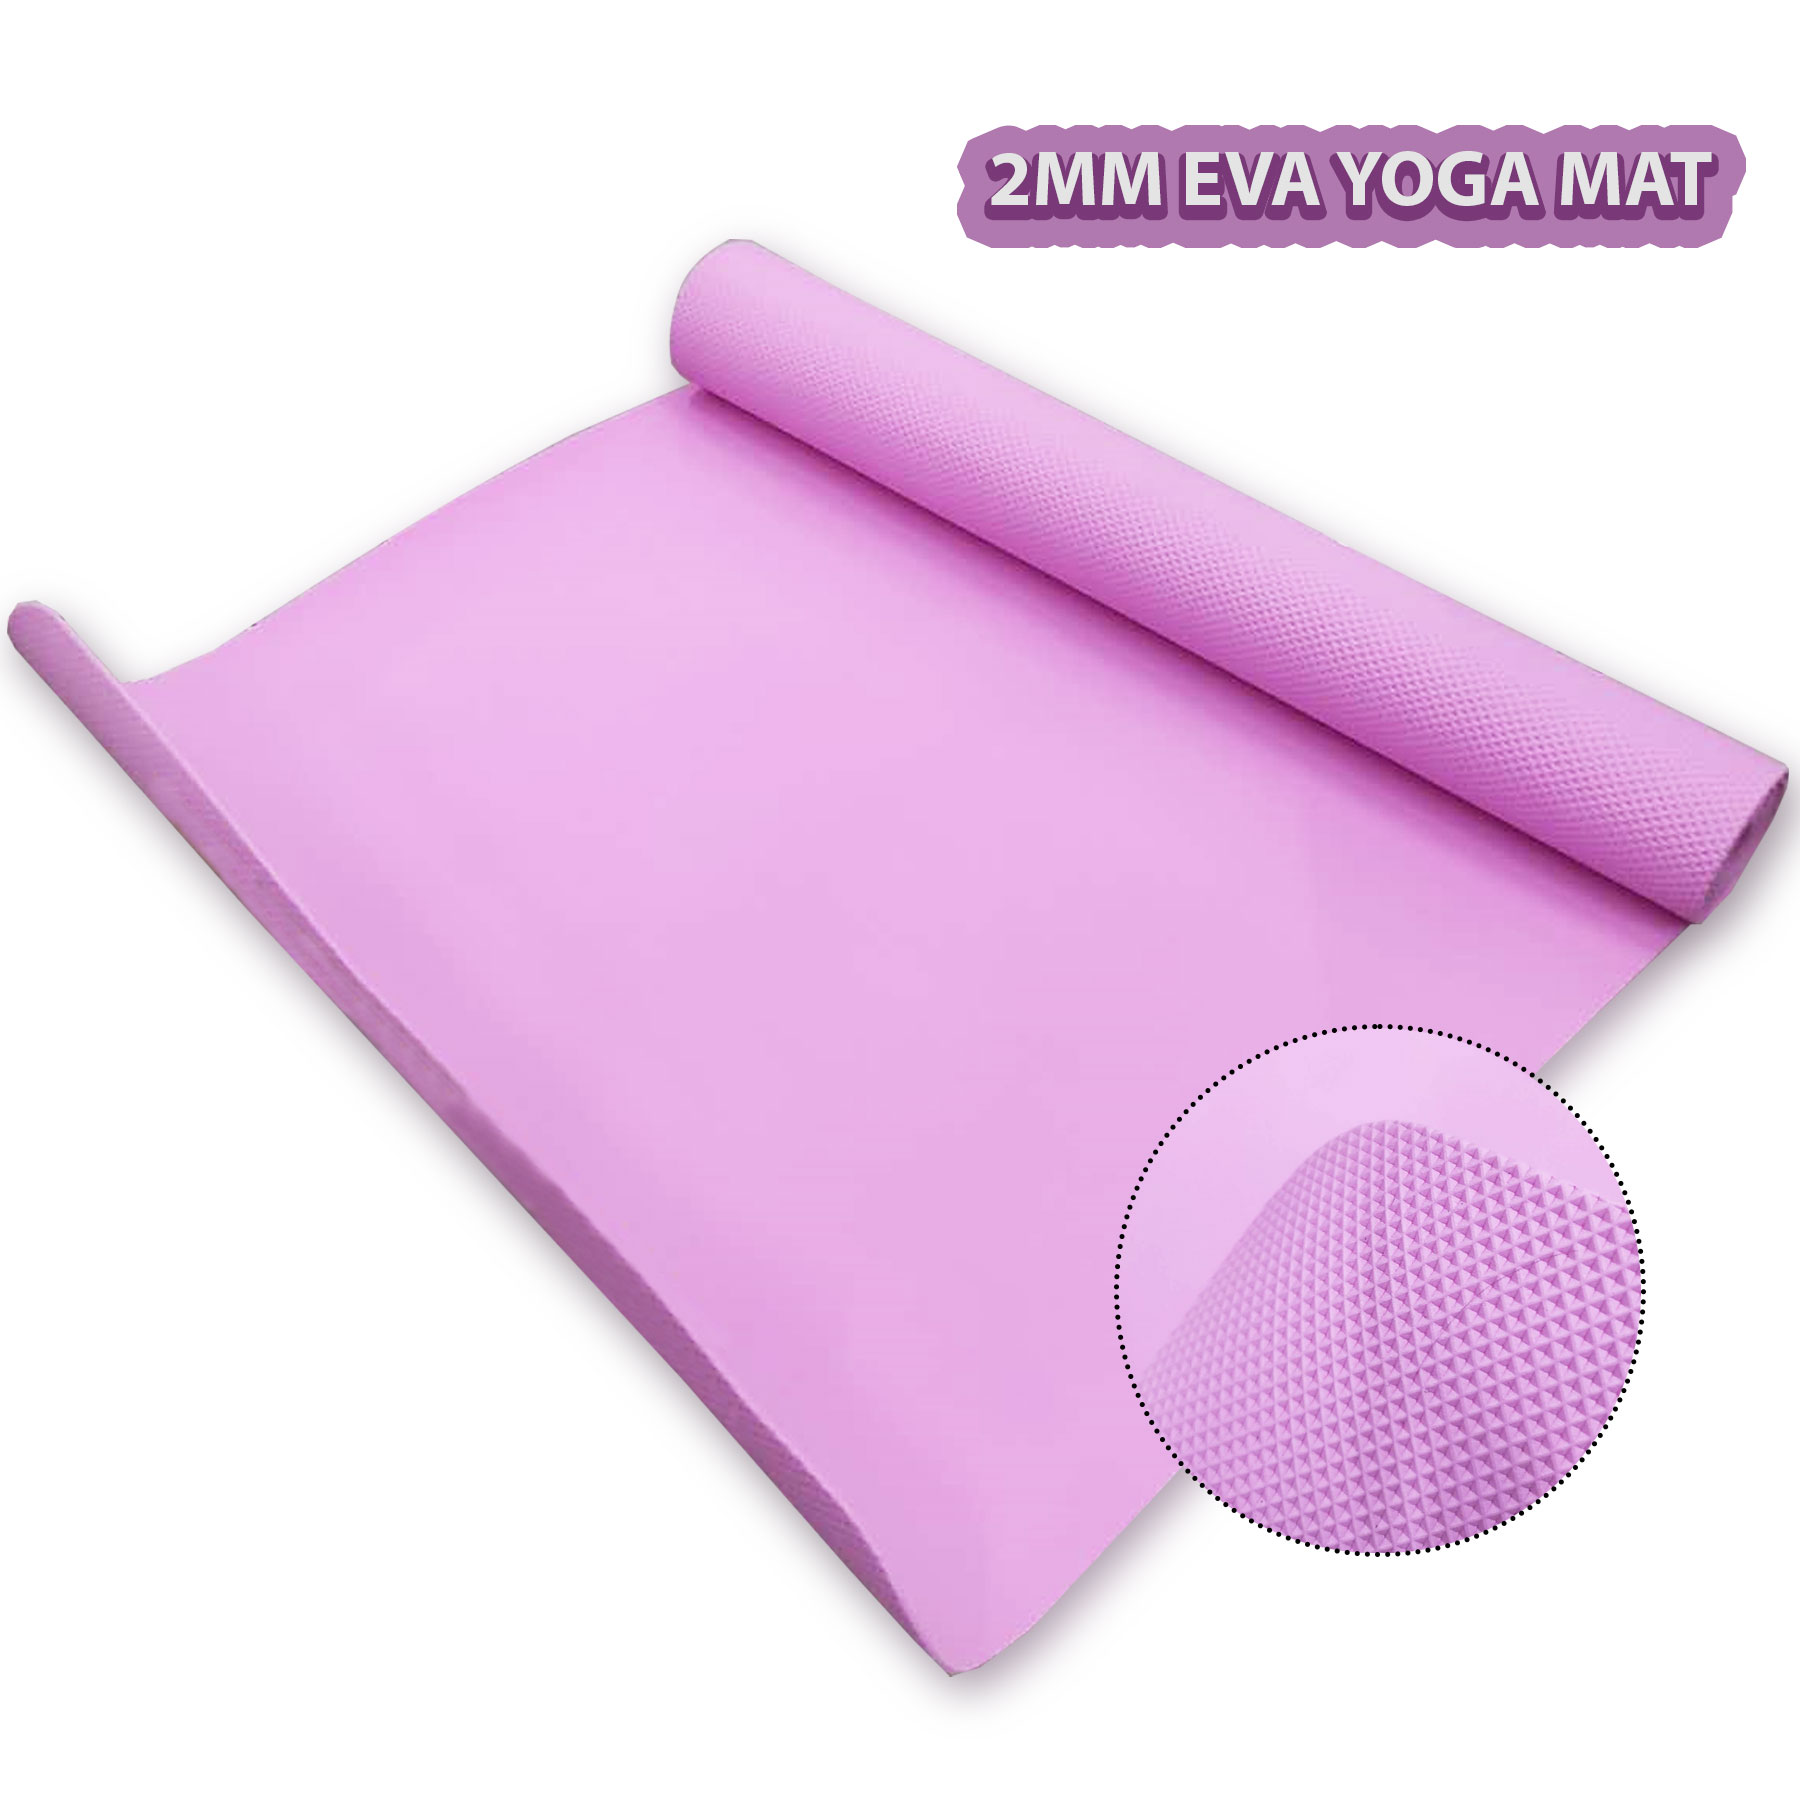 Super Extra Thick Yoga Mat